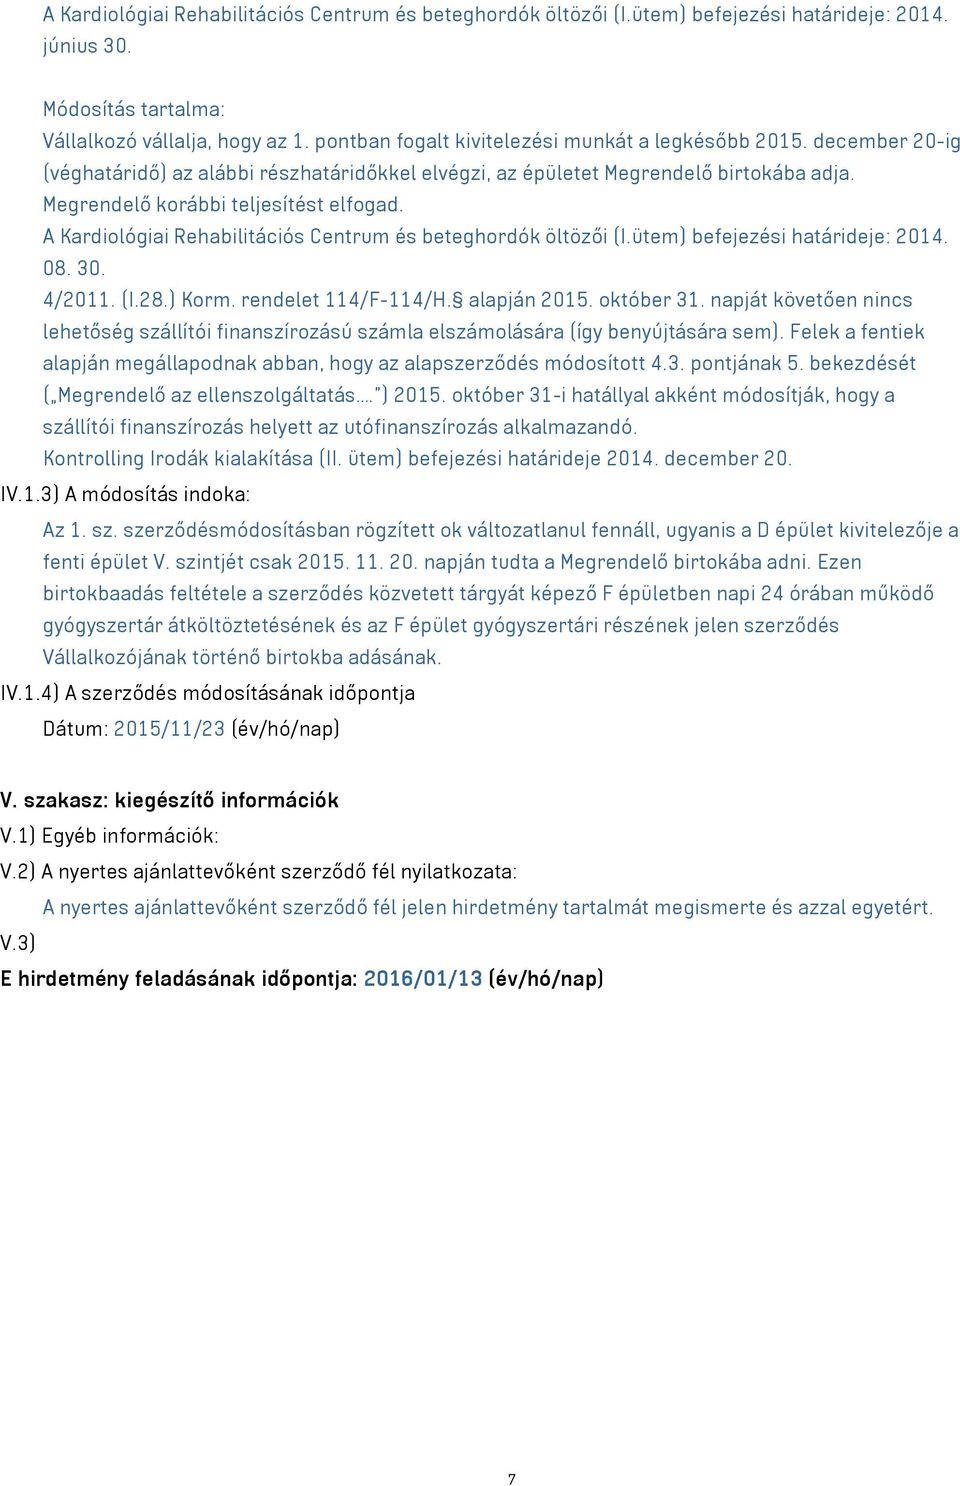 A Kardiológiai Rehabilitációs Centrum és beteghordók öltözői (I.ütem) befejezési határideje: 2014. 08. 30. 4/2011. (I.28.) Korm. rendelet 114/F-114/H. alapján 2015. október 31.